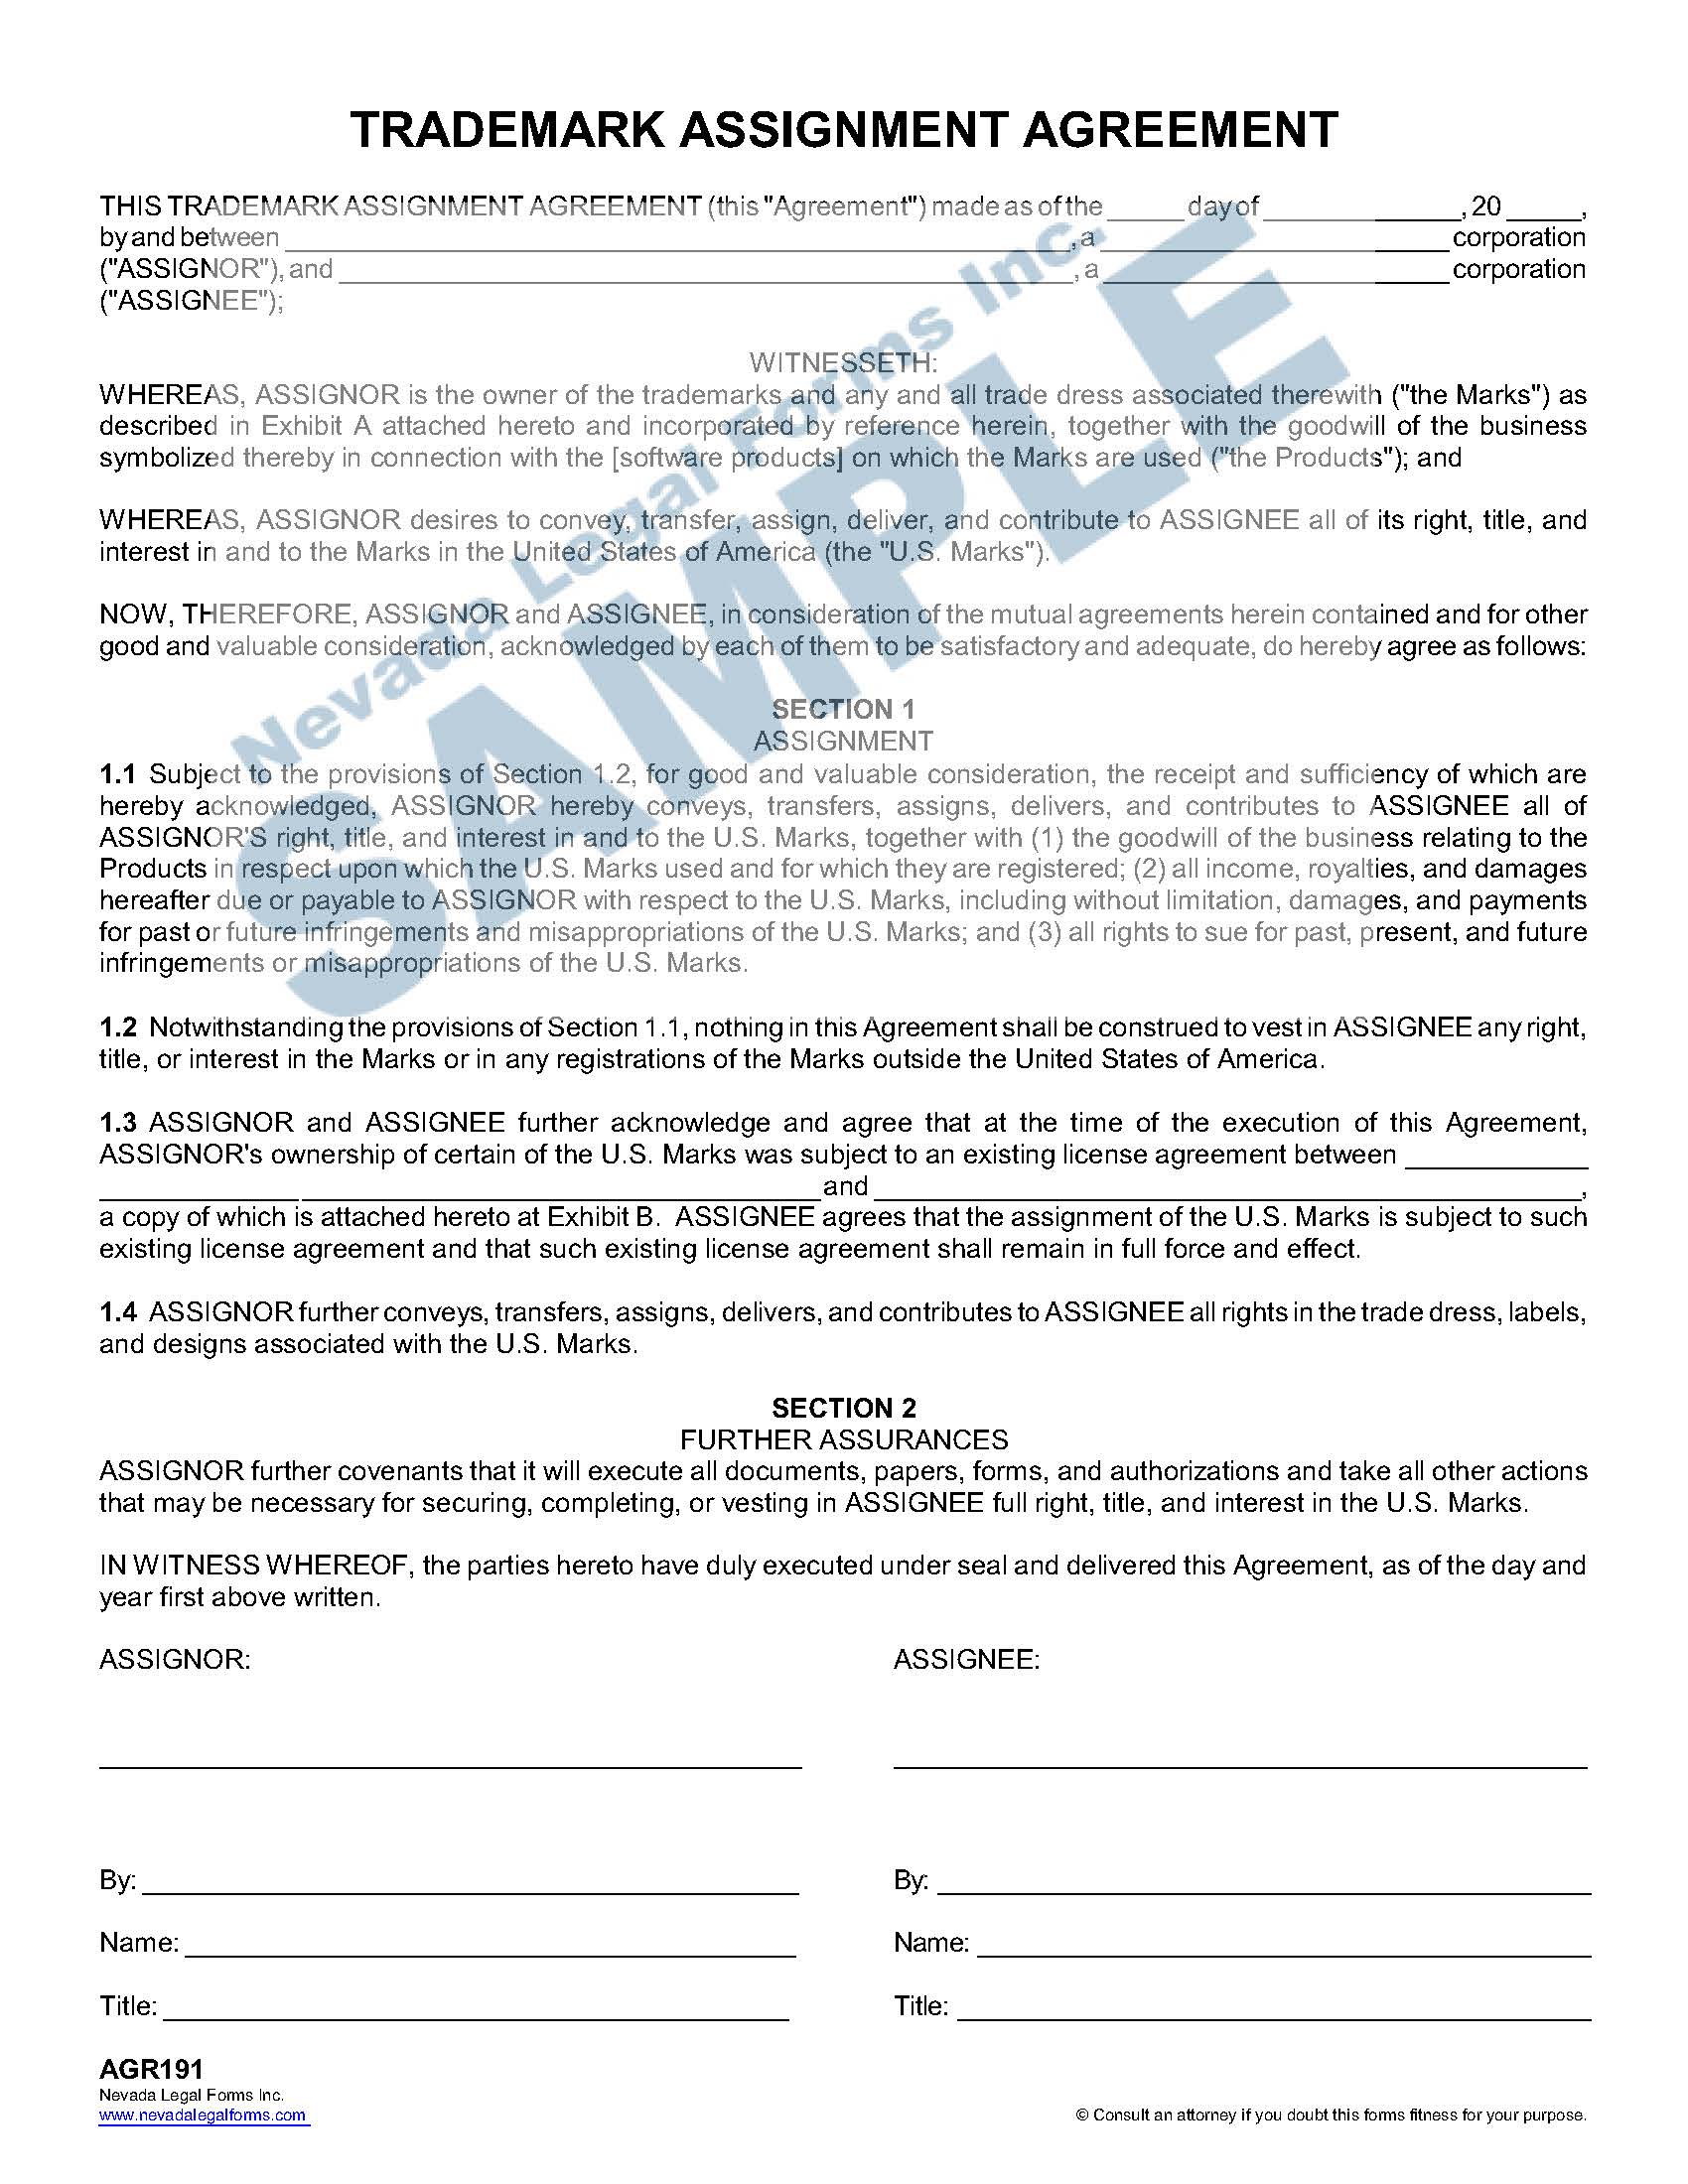 trademark assignment agreement format